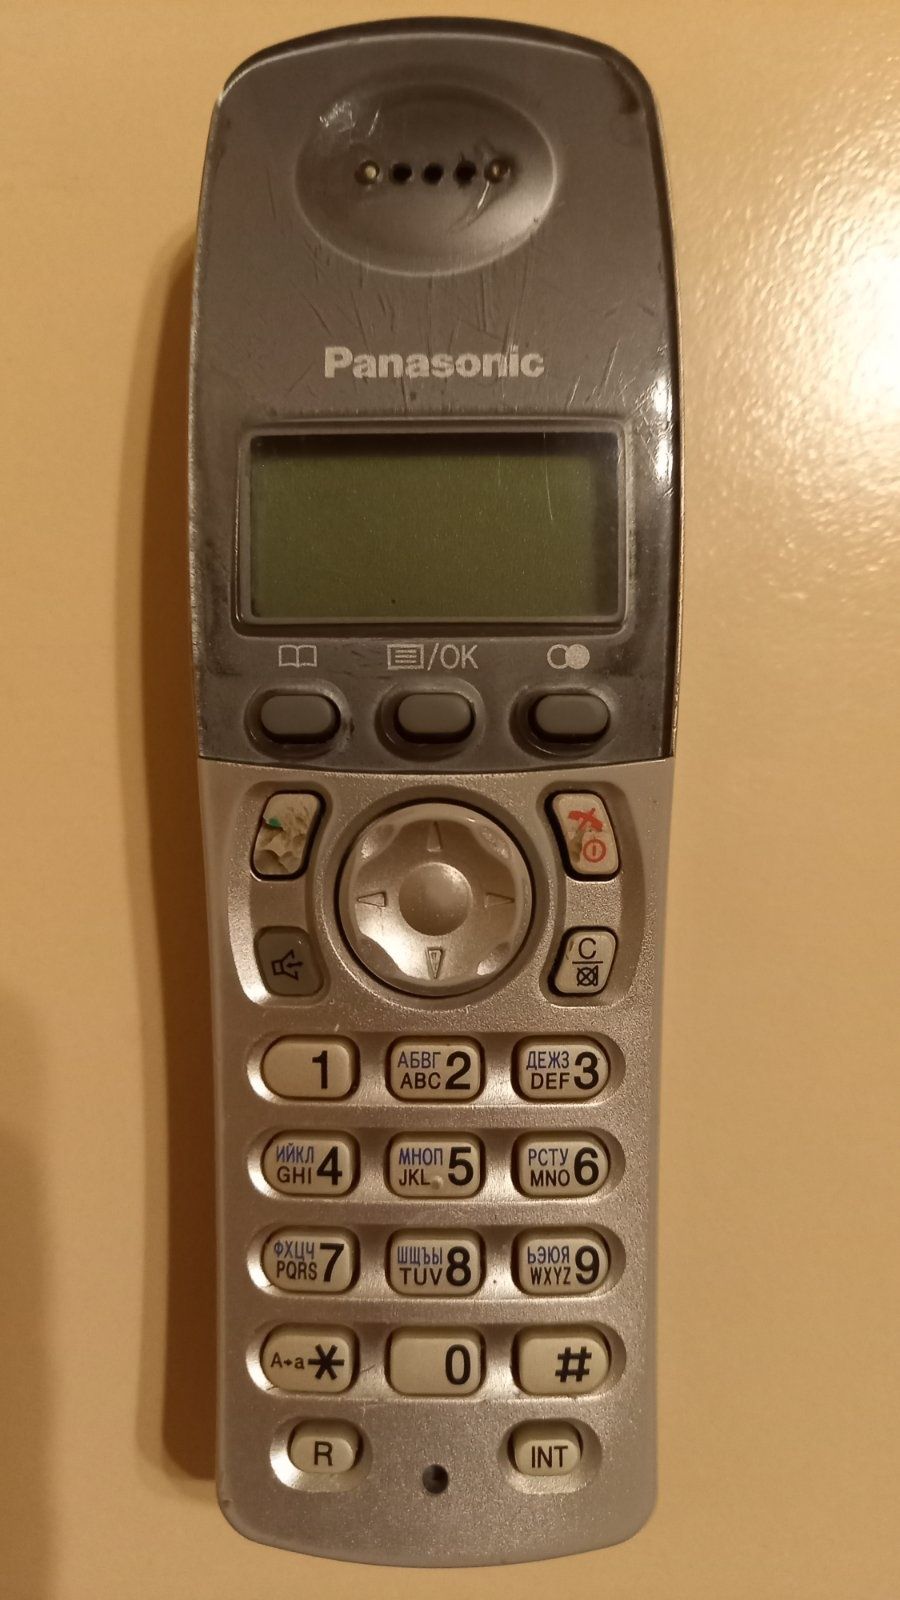 Радіотелефон Panasonik KX-TCD215UA